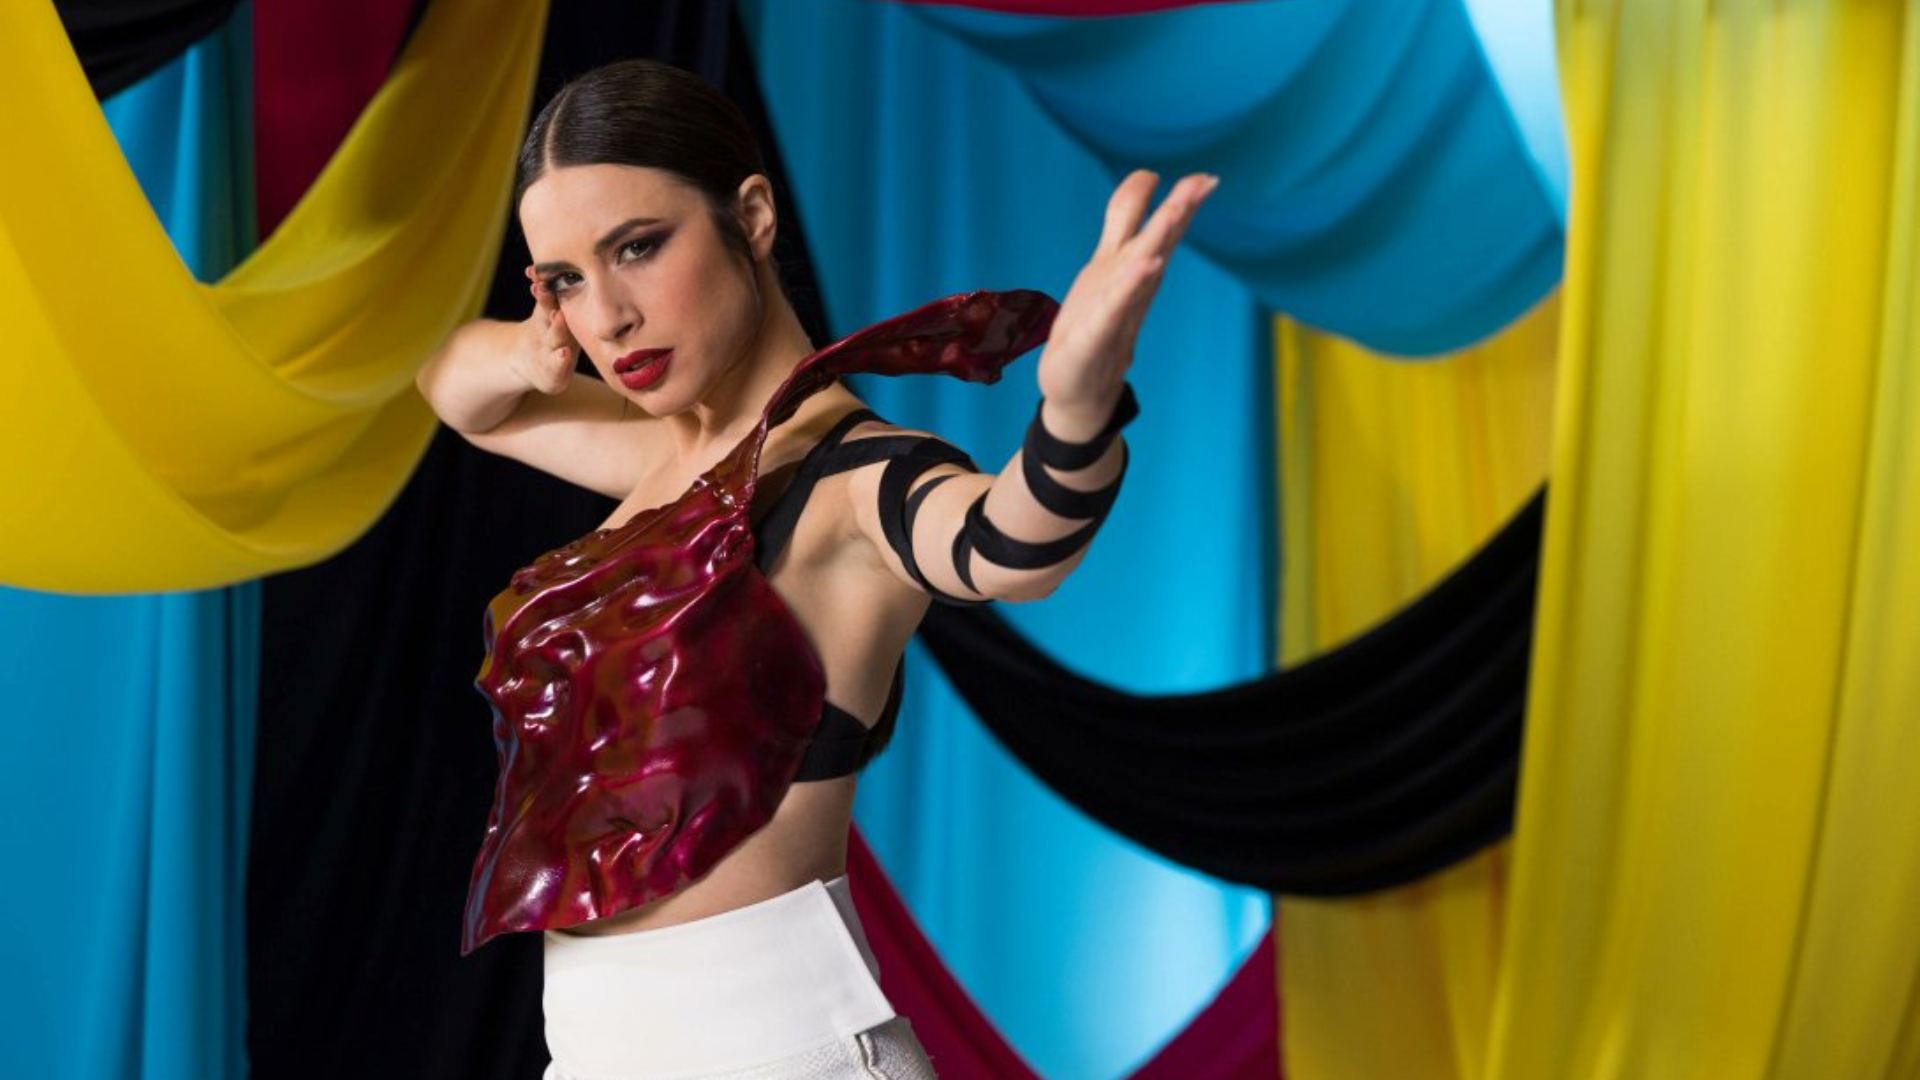 Segon assaig de Blanca Paloma a Eurovisió 2023 amb una millora clau per arribar al triomf | VÍDEO